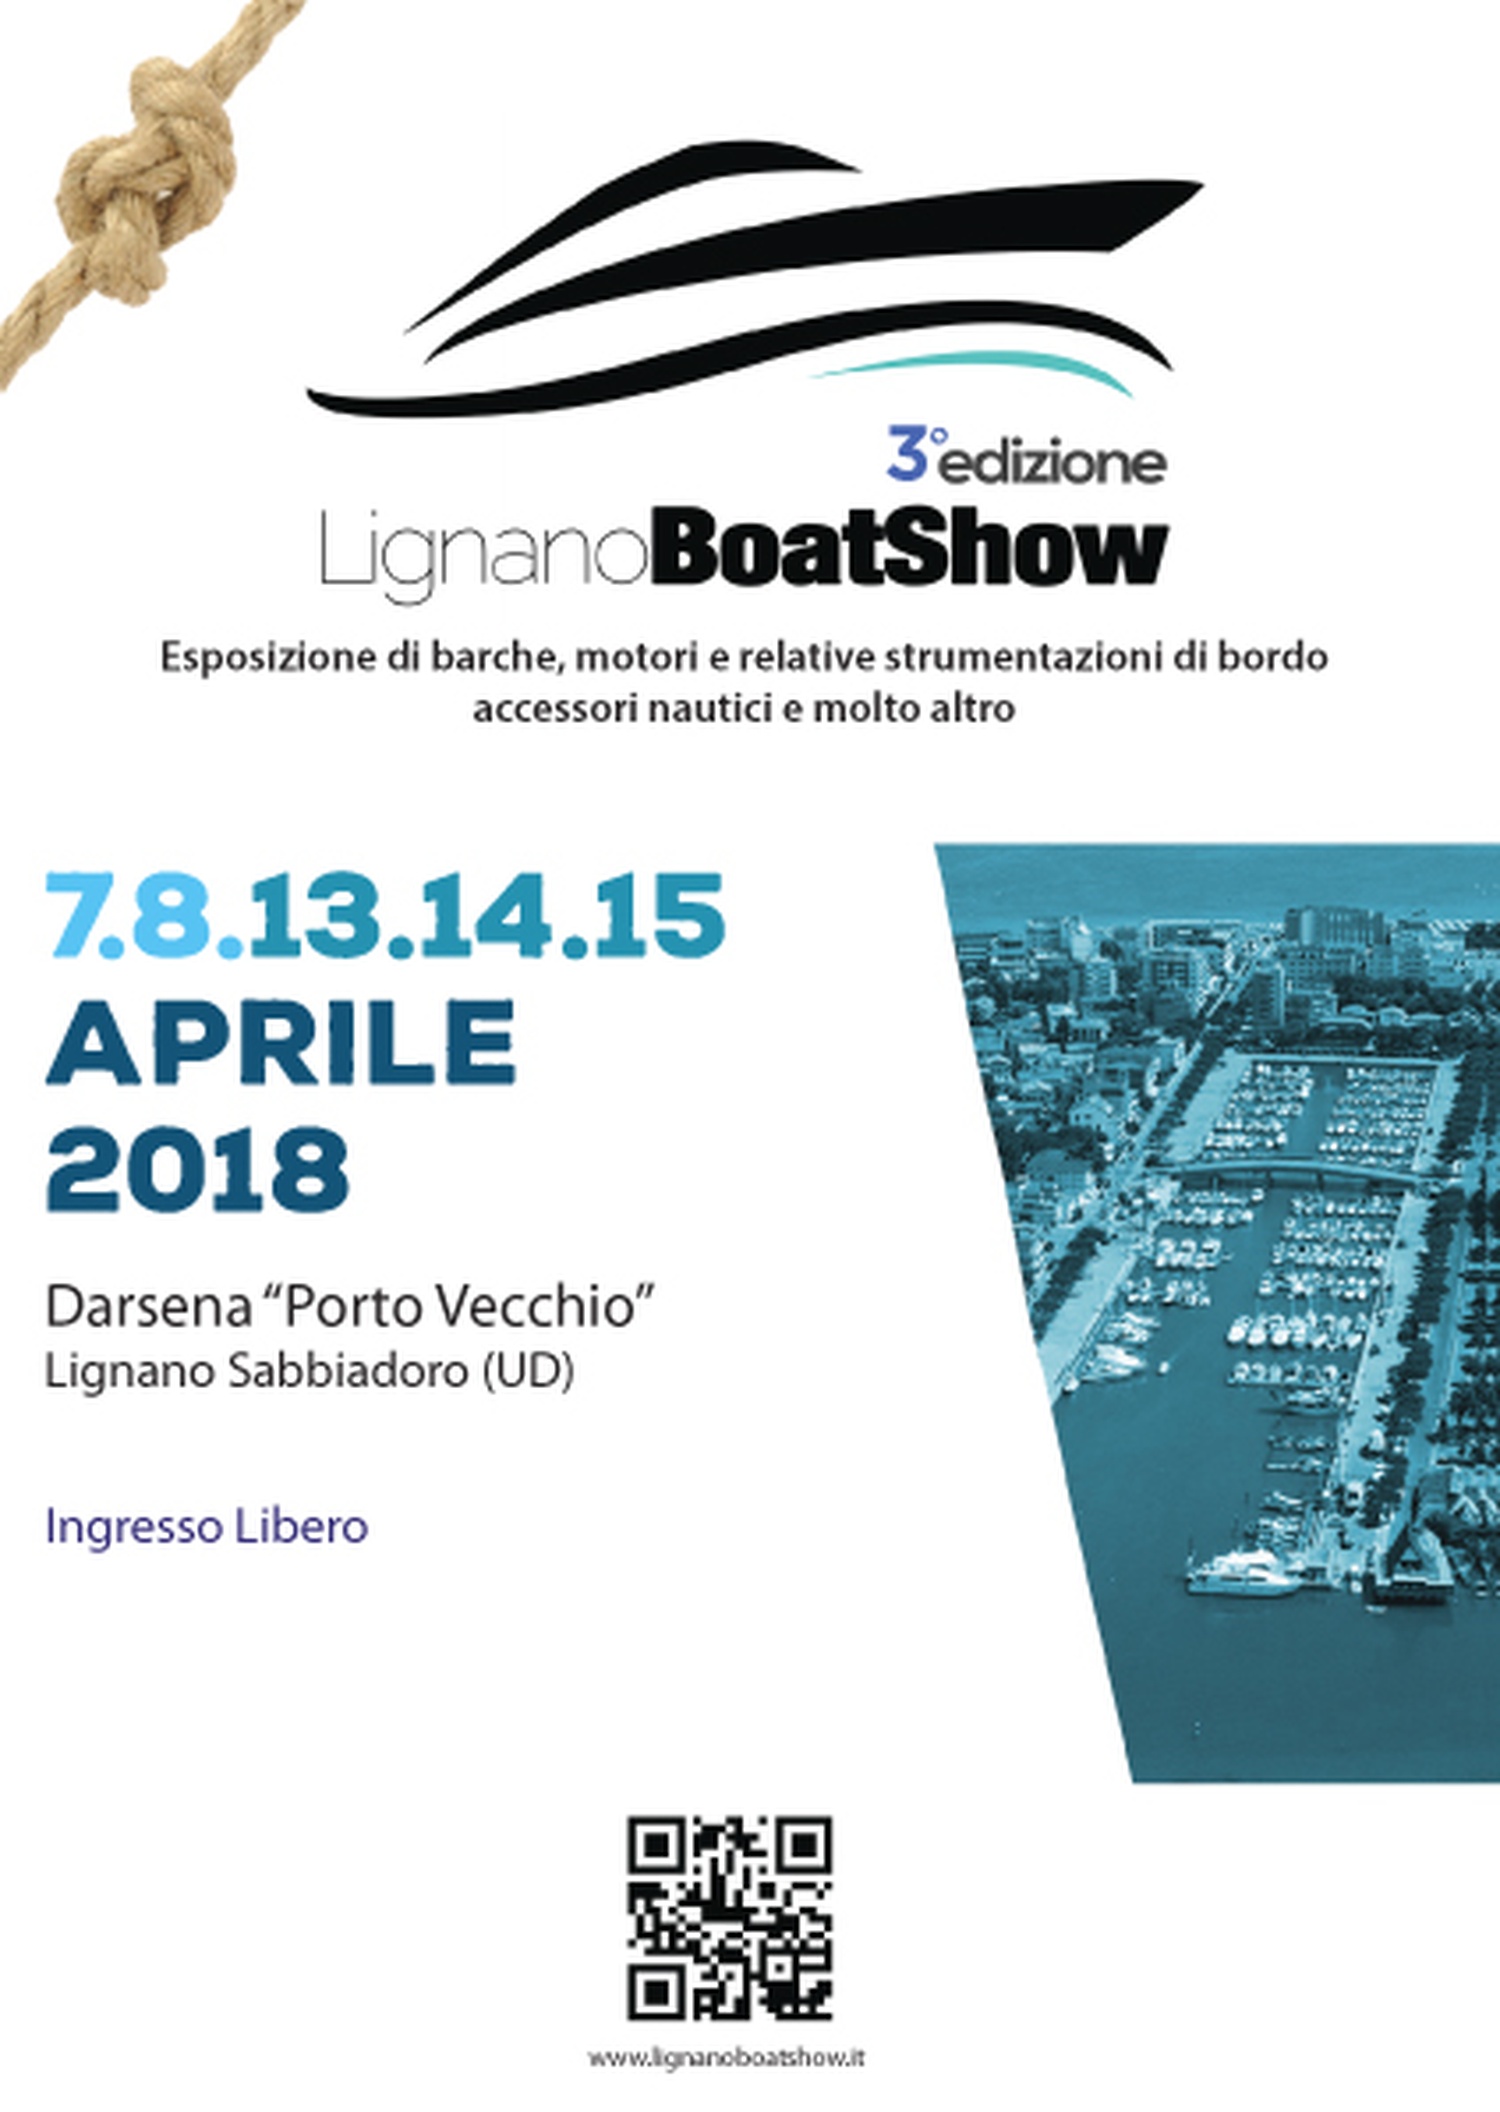 Foto di Lignano Boat Show 2018